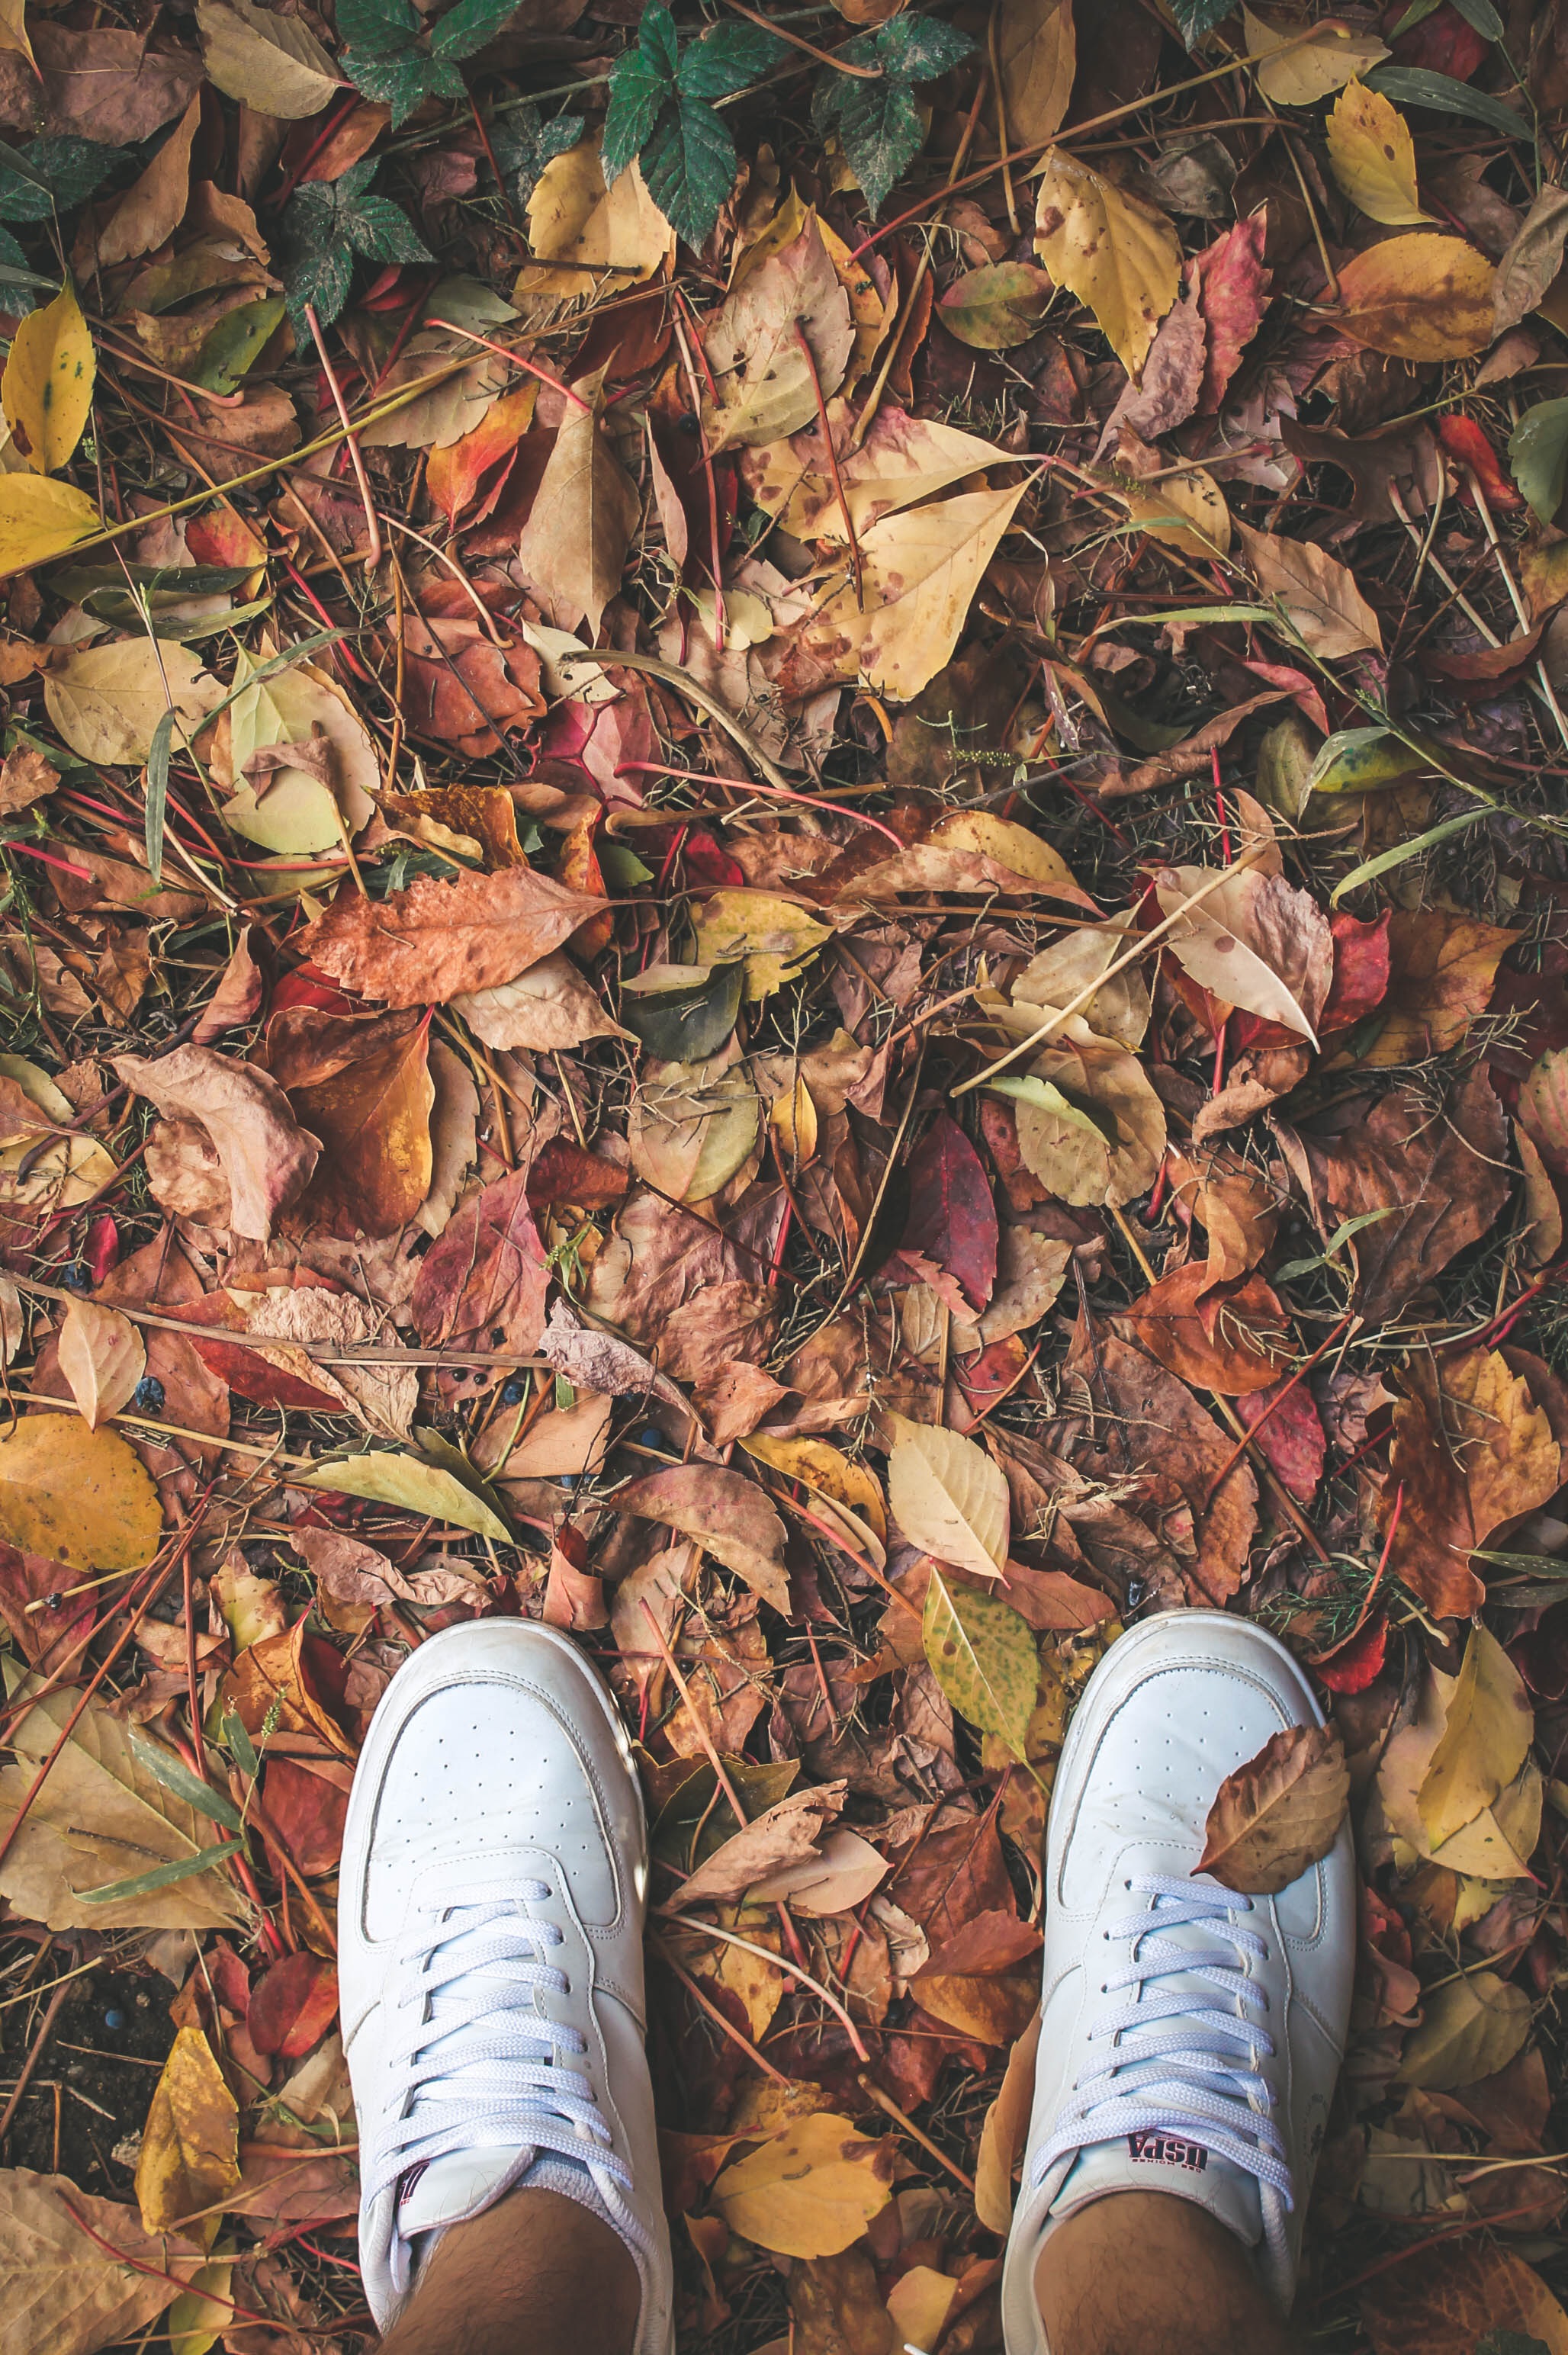 Free HD autumn, miscellanea, miscellaneous, legs, sneakers, foliage